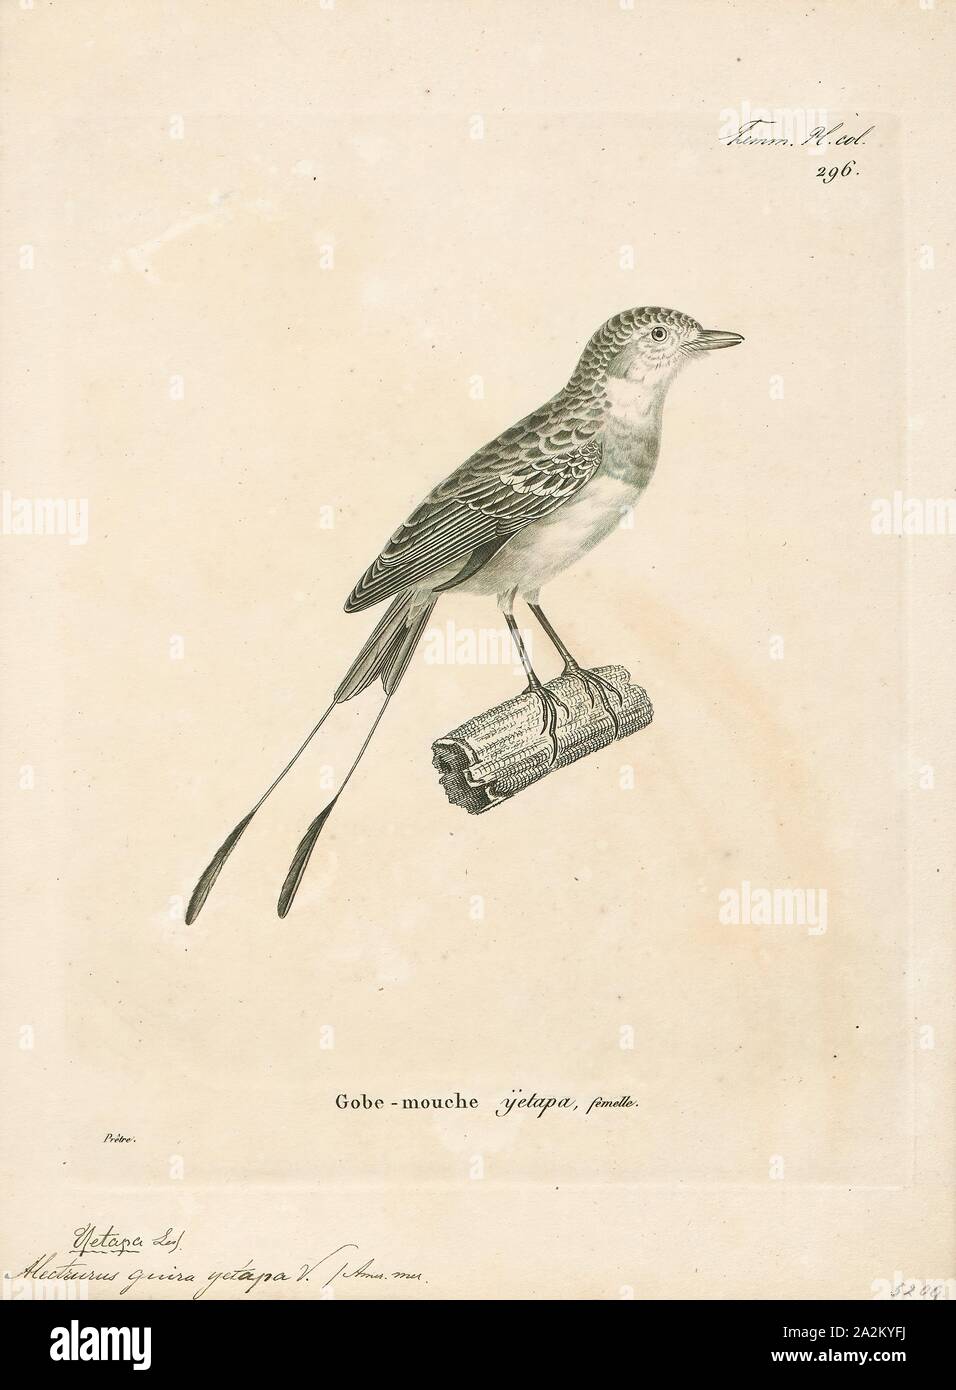 Alectrurus guirayetapa, Drucken, Alectrurus ist eine Gattung der Südamerikanischen Vögel in der Tyrann schopftyrann Familie Tyrannidae., 1700-1880 Stockfoto